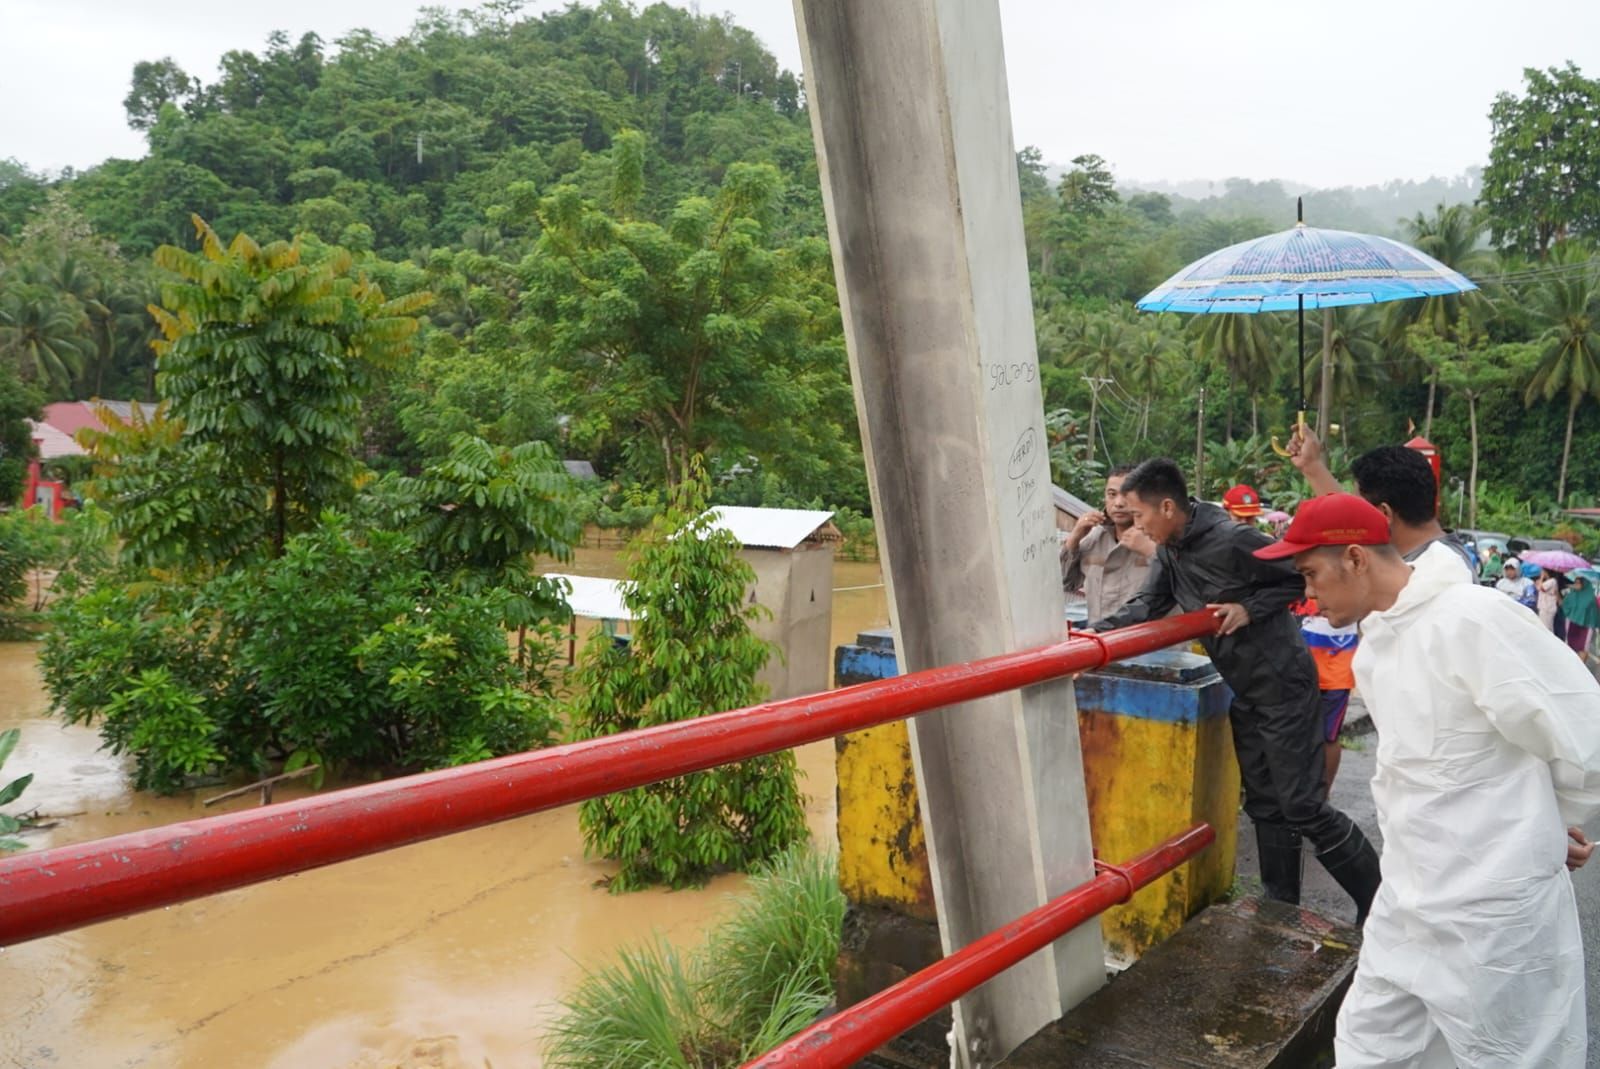 Bupati Iskandar memantau kondisi jembatan saat terjadi luapan air